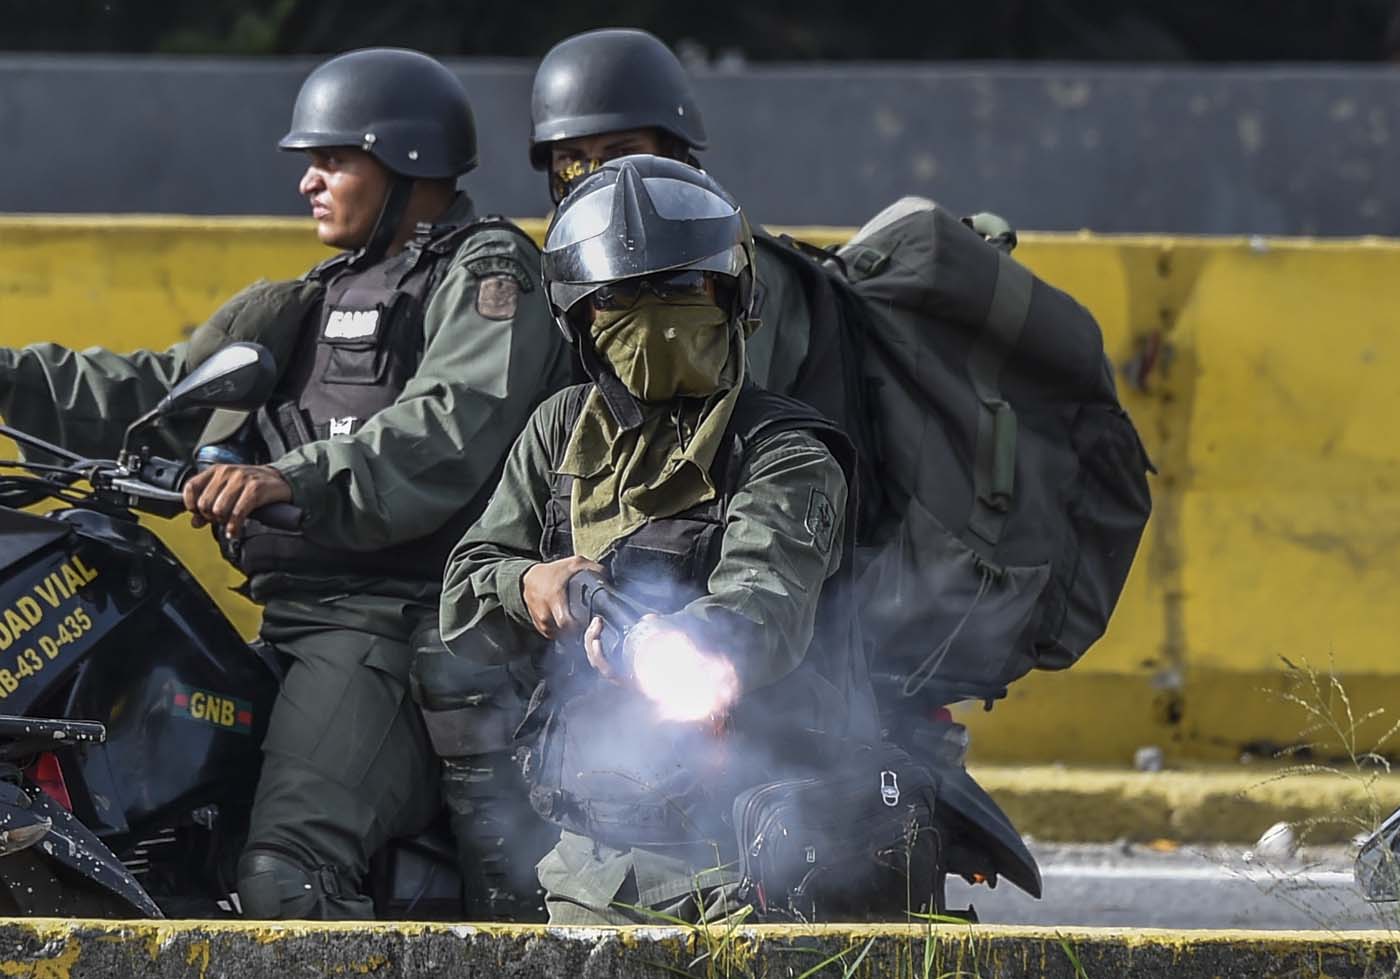 ¡Ay que lindo! El “glorioso” Ejército Bolivariano captó a 16 mil nuevos aspirantes a represores